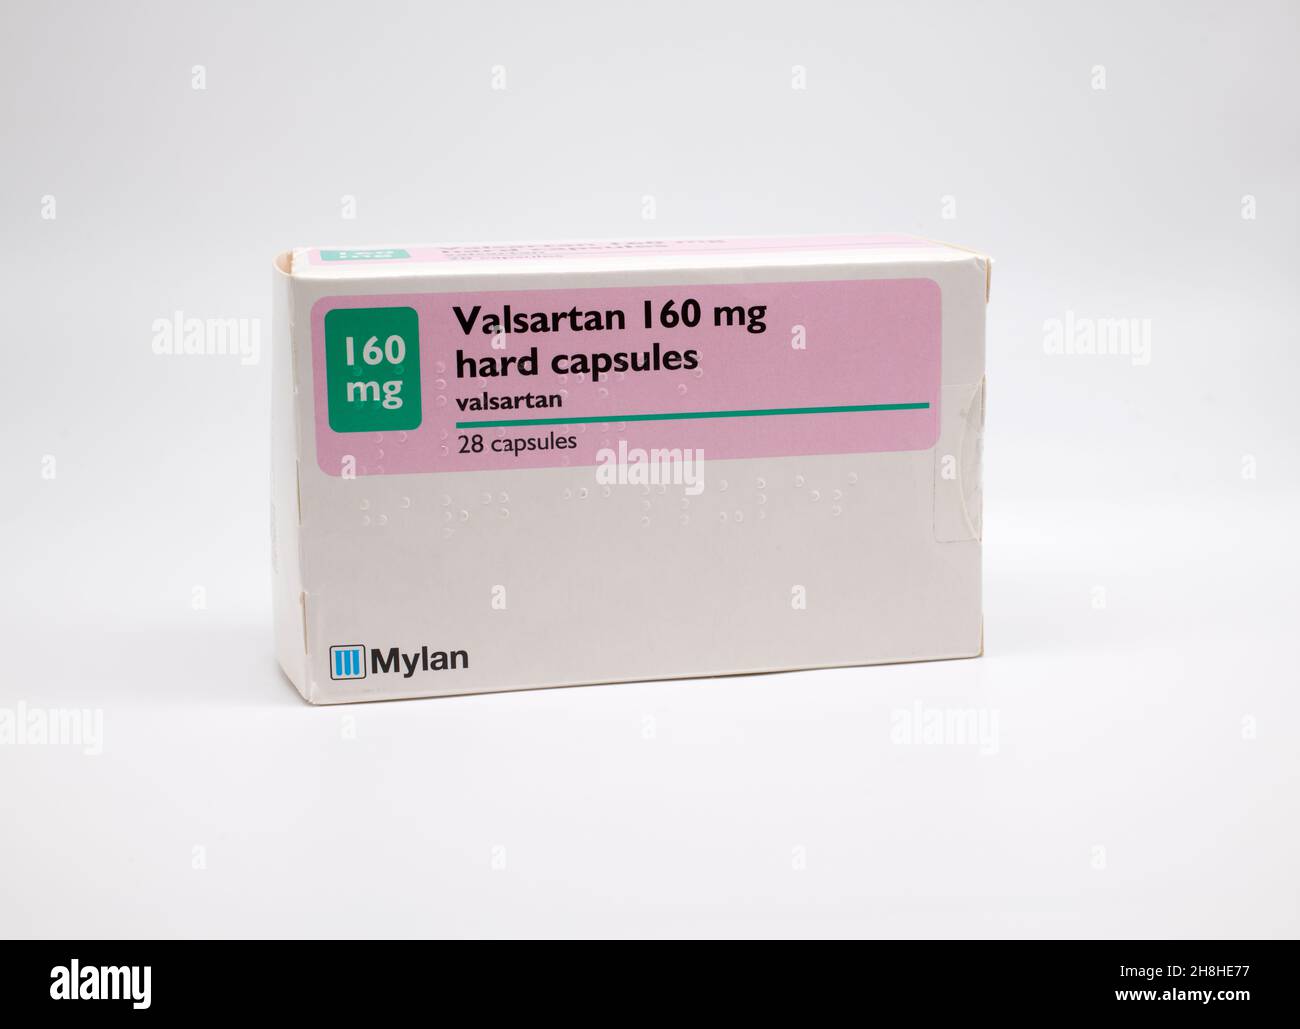 Valsartan Tabletten gegen Bluthochdruck Stockfotografie - Alamy